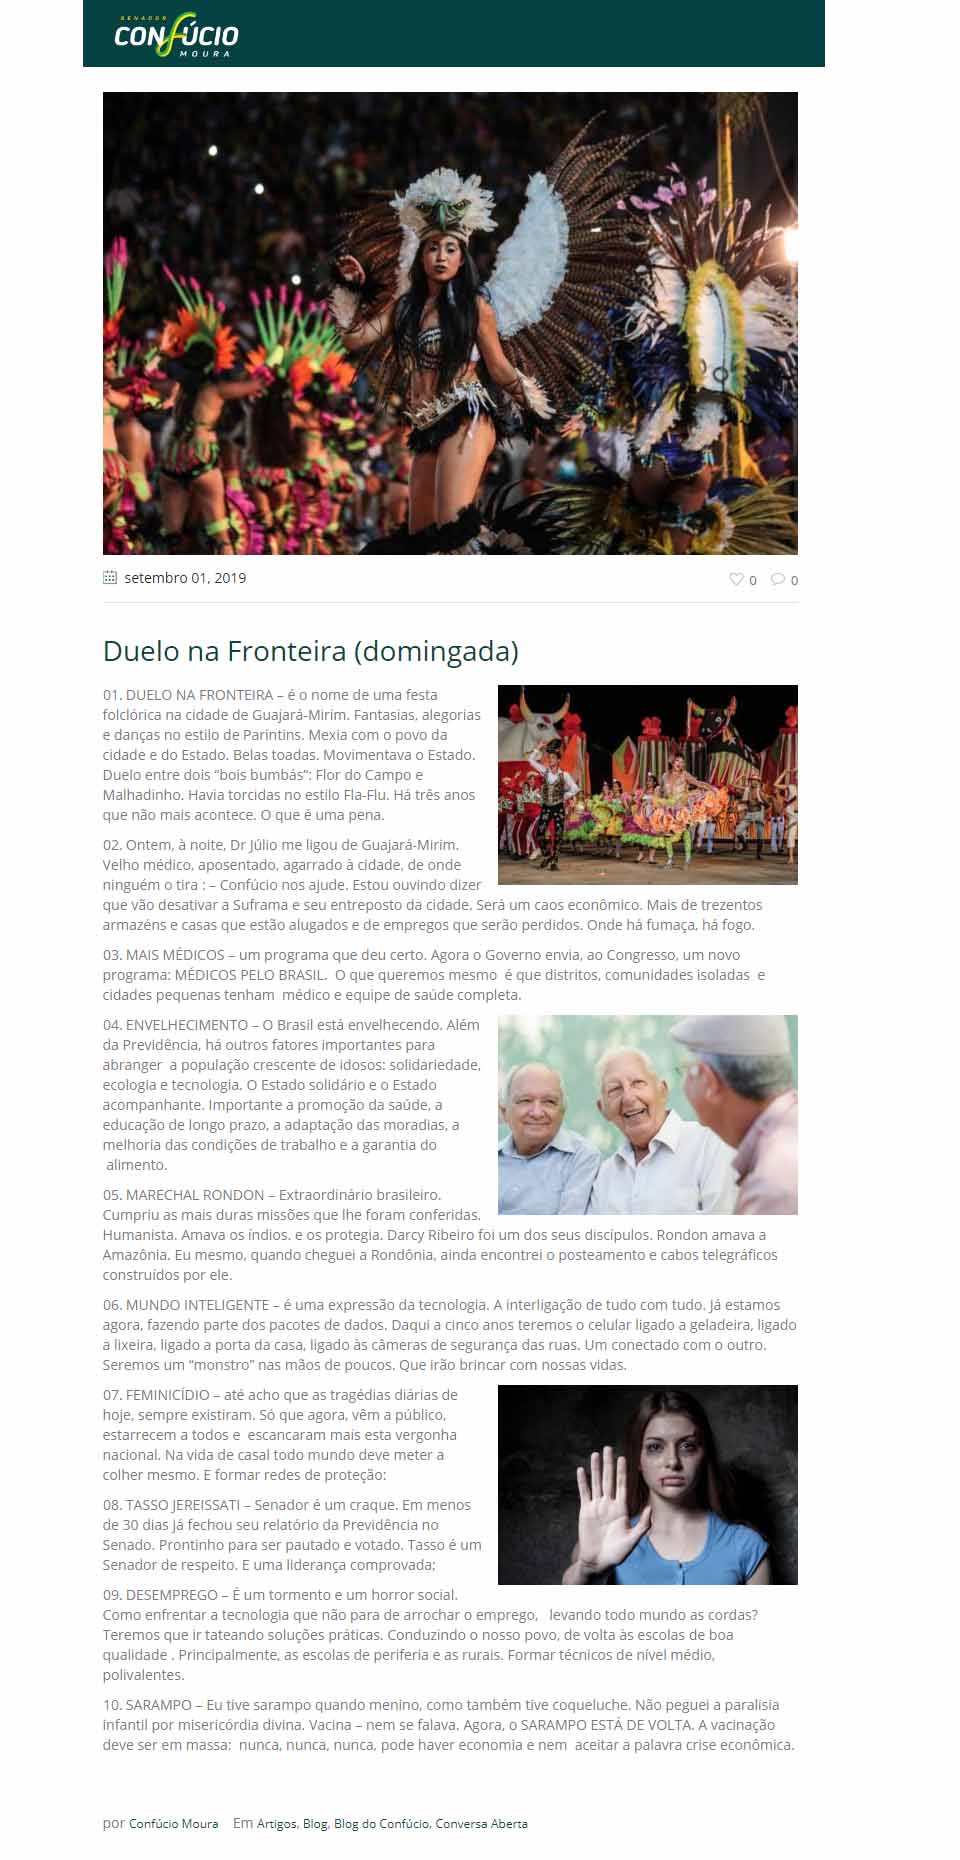 Confúcio fala sobre possível fechamento da Suframa em Guajará-Mirim e fica estarrecido com dados sobre feminicídio no Brasil